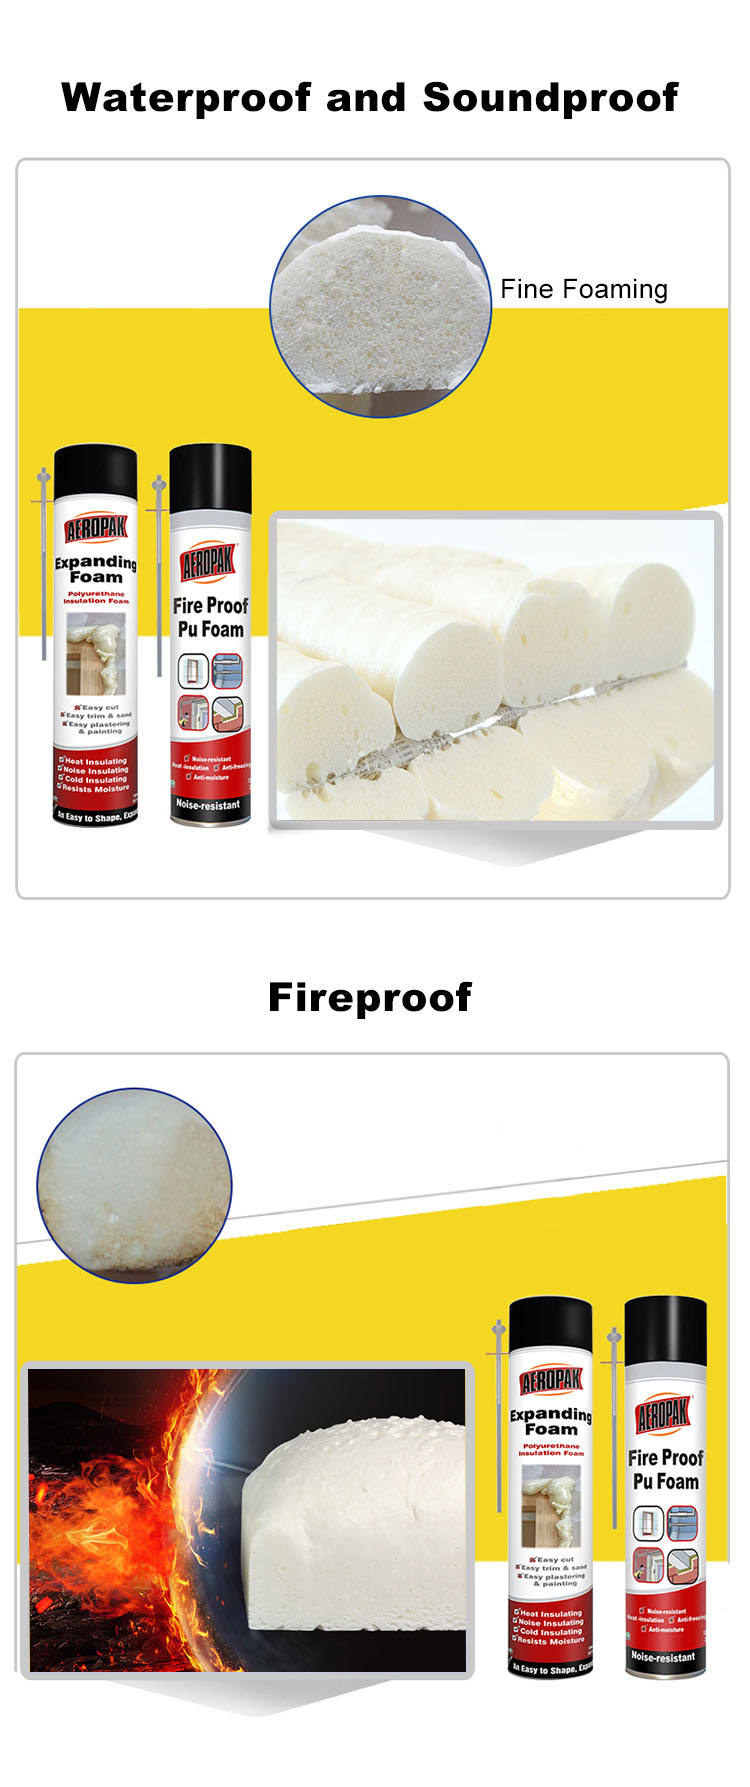 AEROPAK espuma de poliuretano spray or Spray PU Foam Insulation